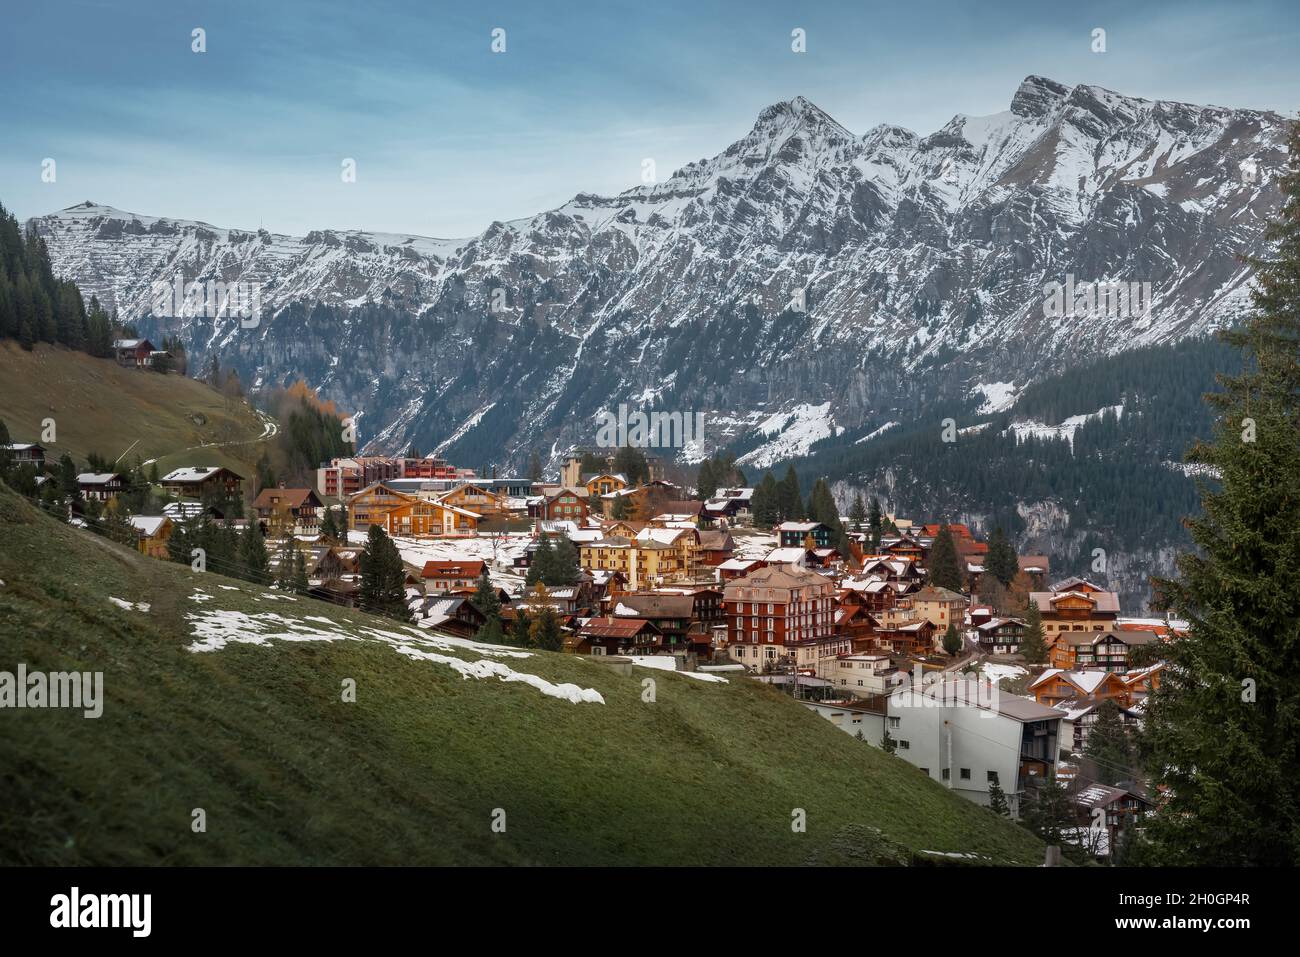 Murren Village with Tschuggen Mountain on background - Murren, Switzerland Stock Photo